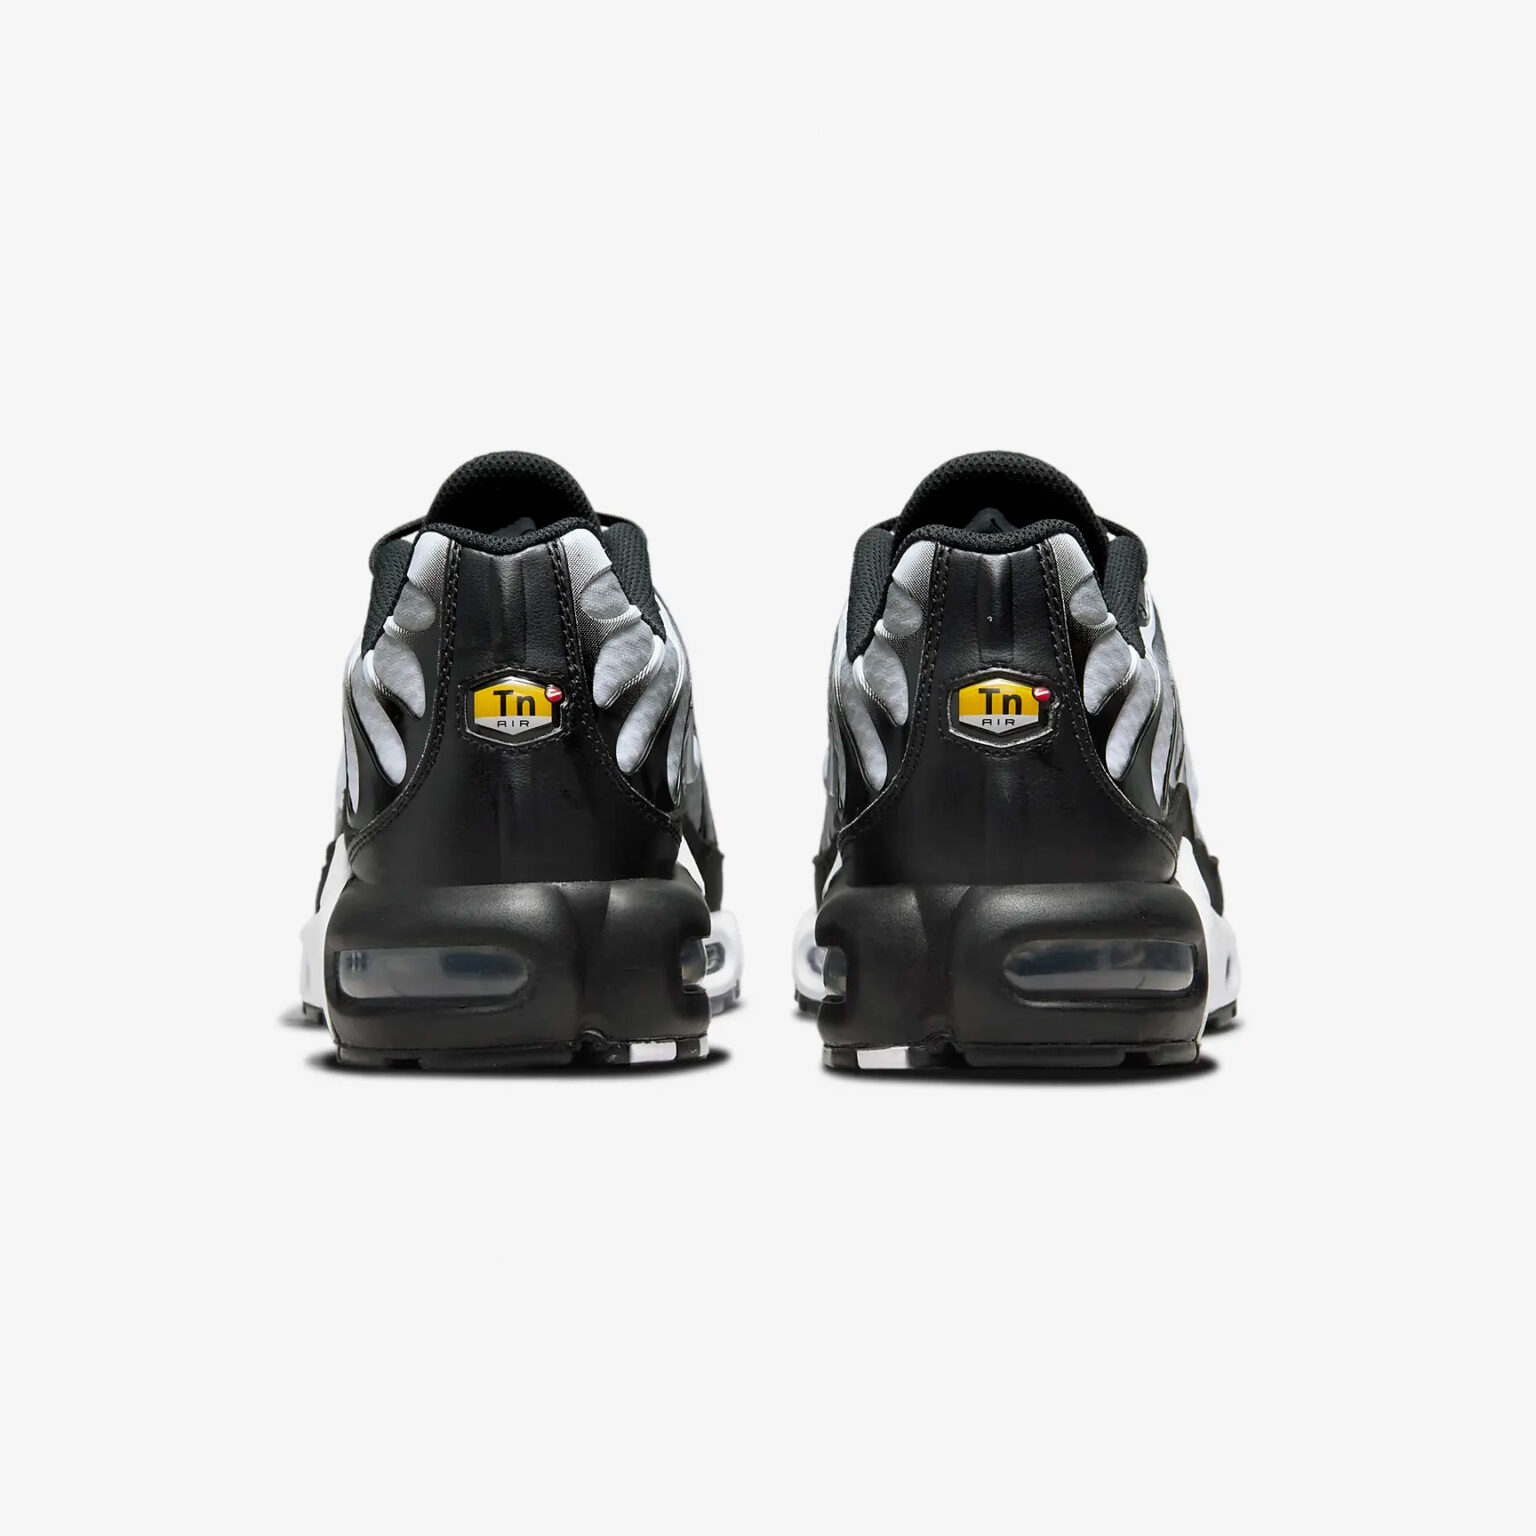 Nike Air Max Plus Tn 'Smoke Fade' DM0032-003 - Pretty Kickz